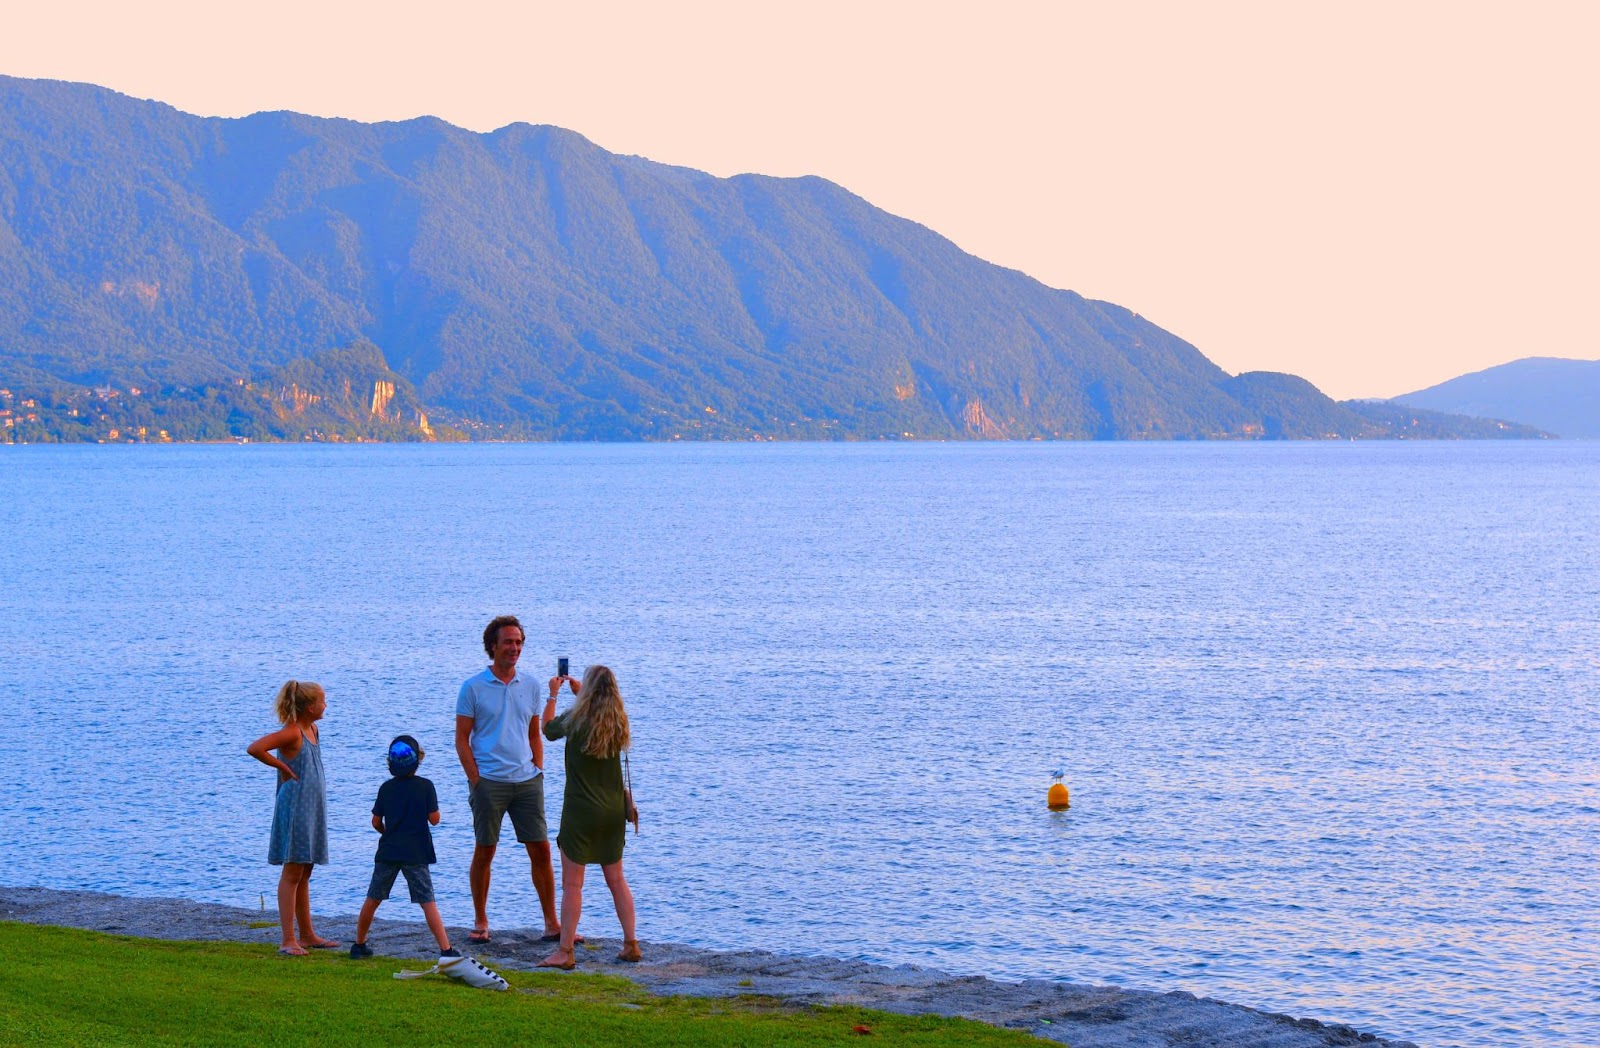 Famiglia felice sulla spiaggia vuota alla fine di una giornata estiva con lago e montagne sullo sfondo a Cannero, Verbania Italia